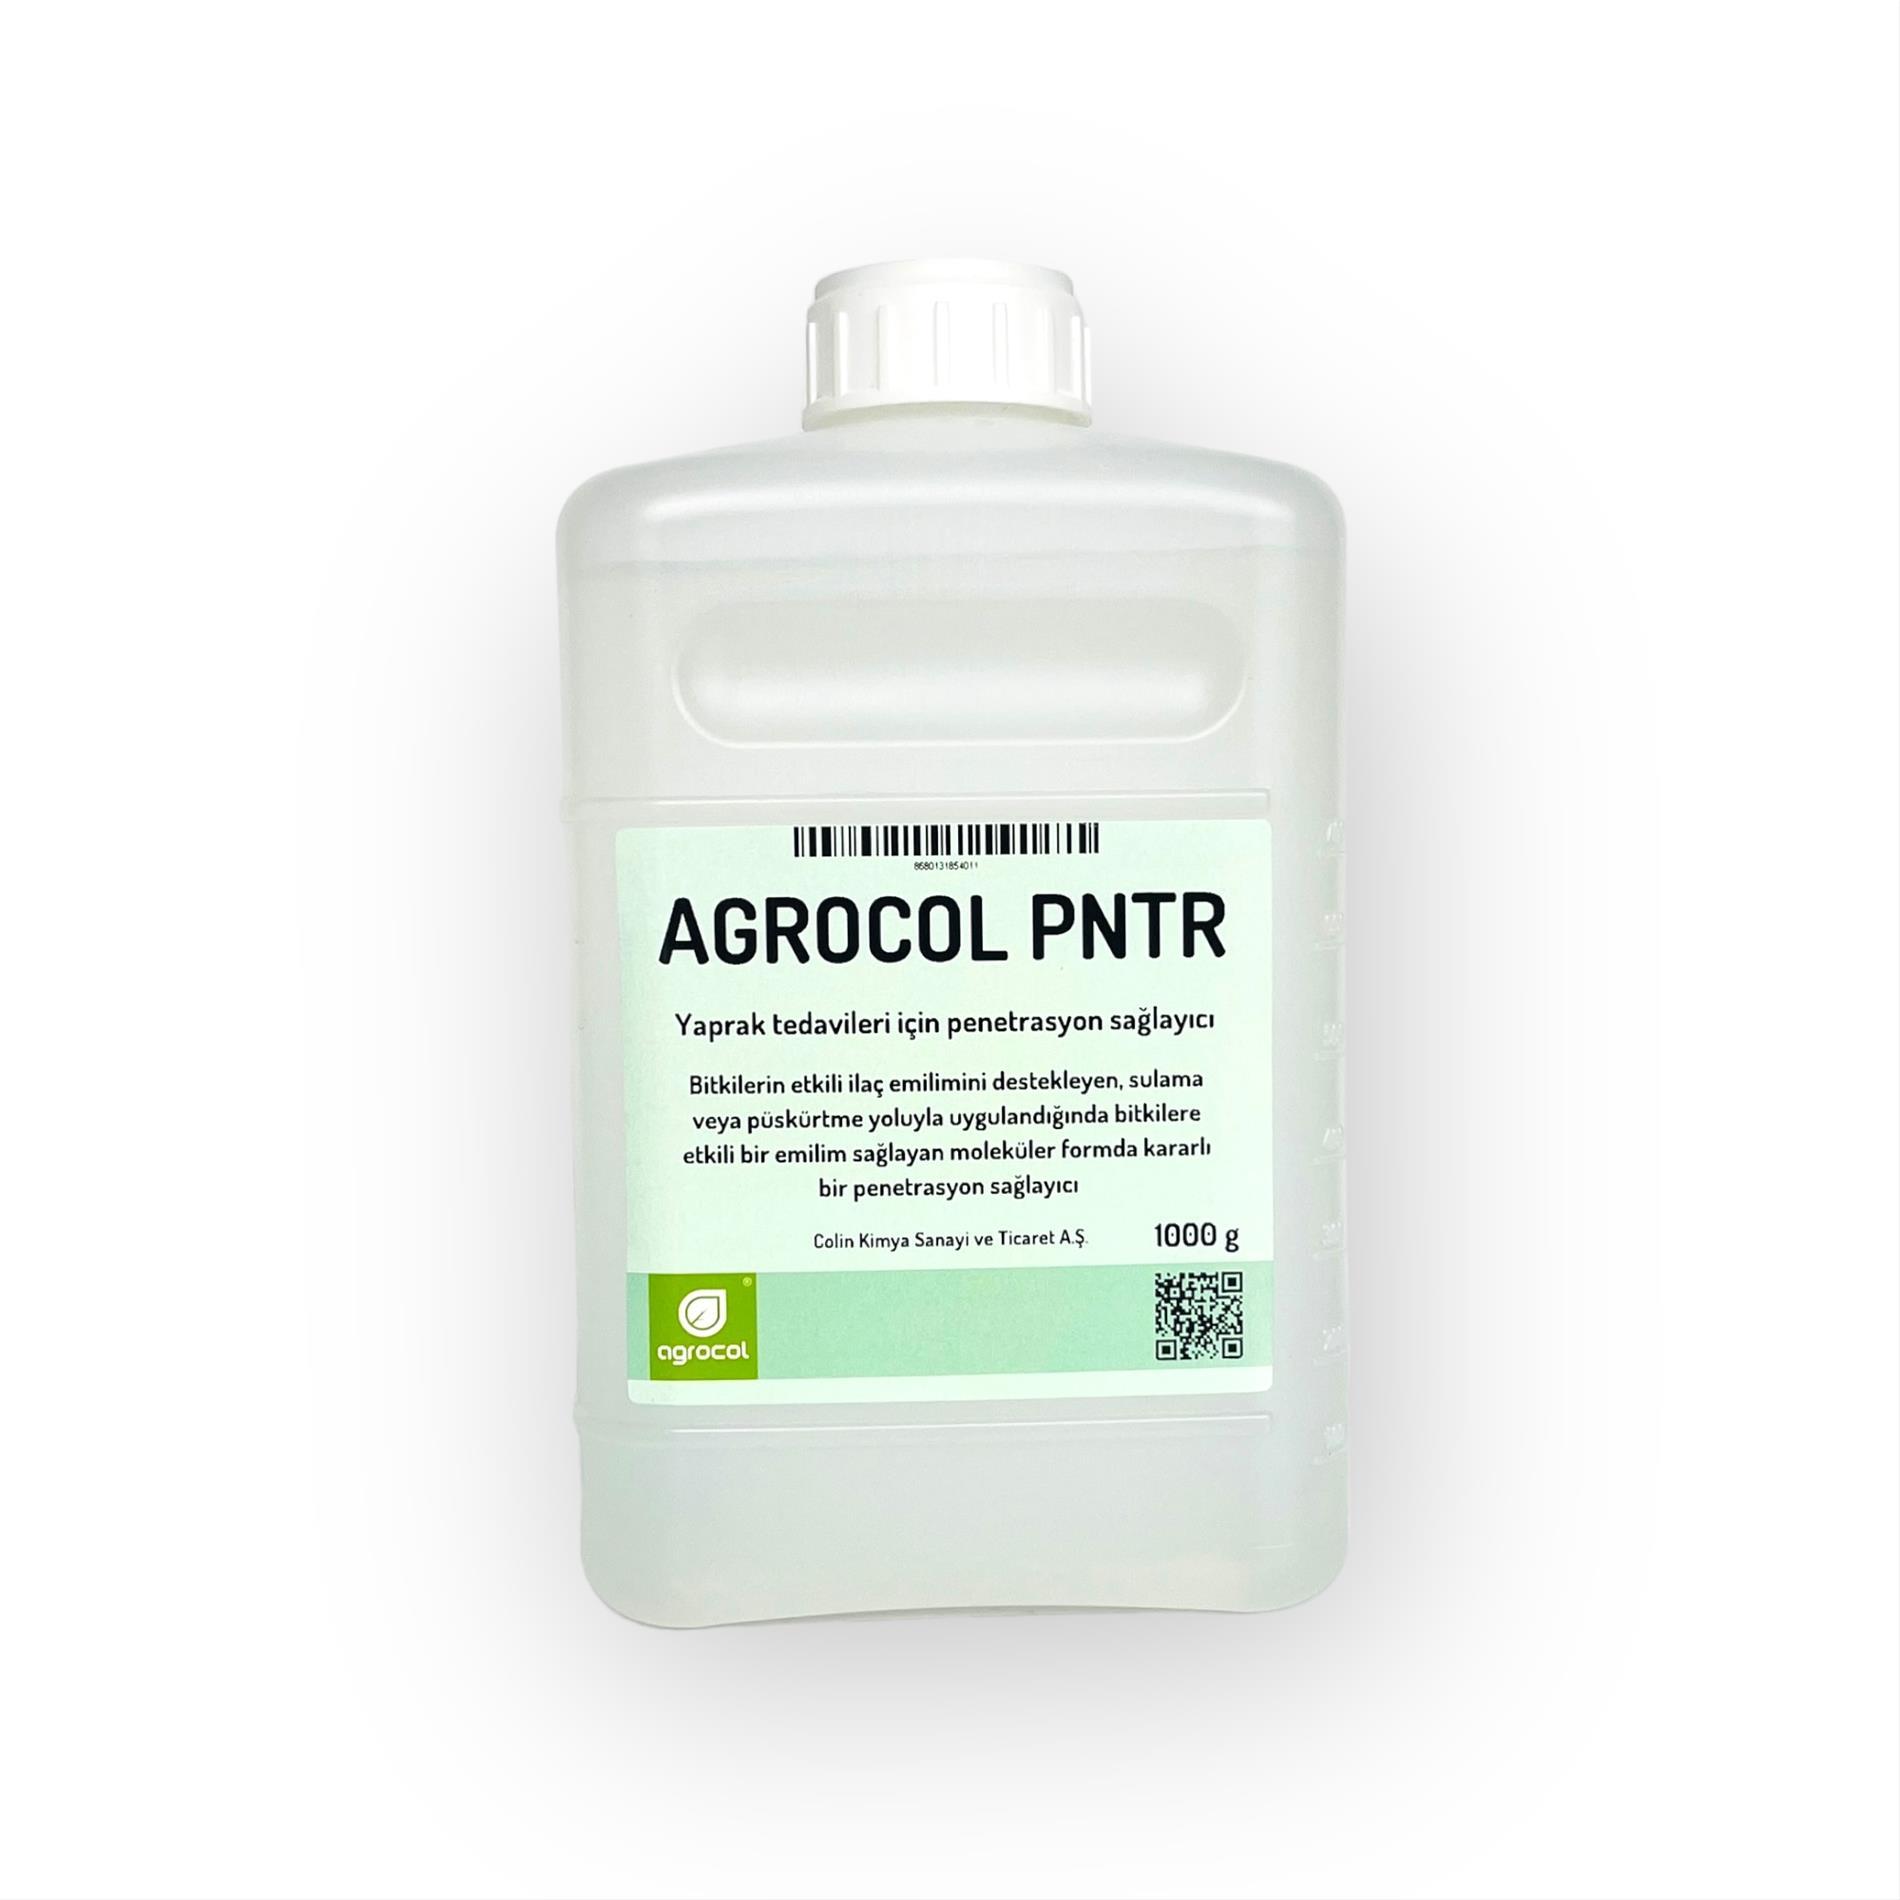 AGROCOL PNTR - Yaprak tedavileri için penetrasyon sağlayıcı